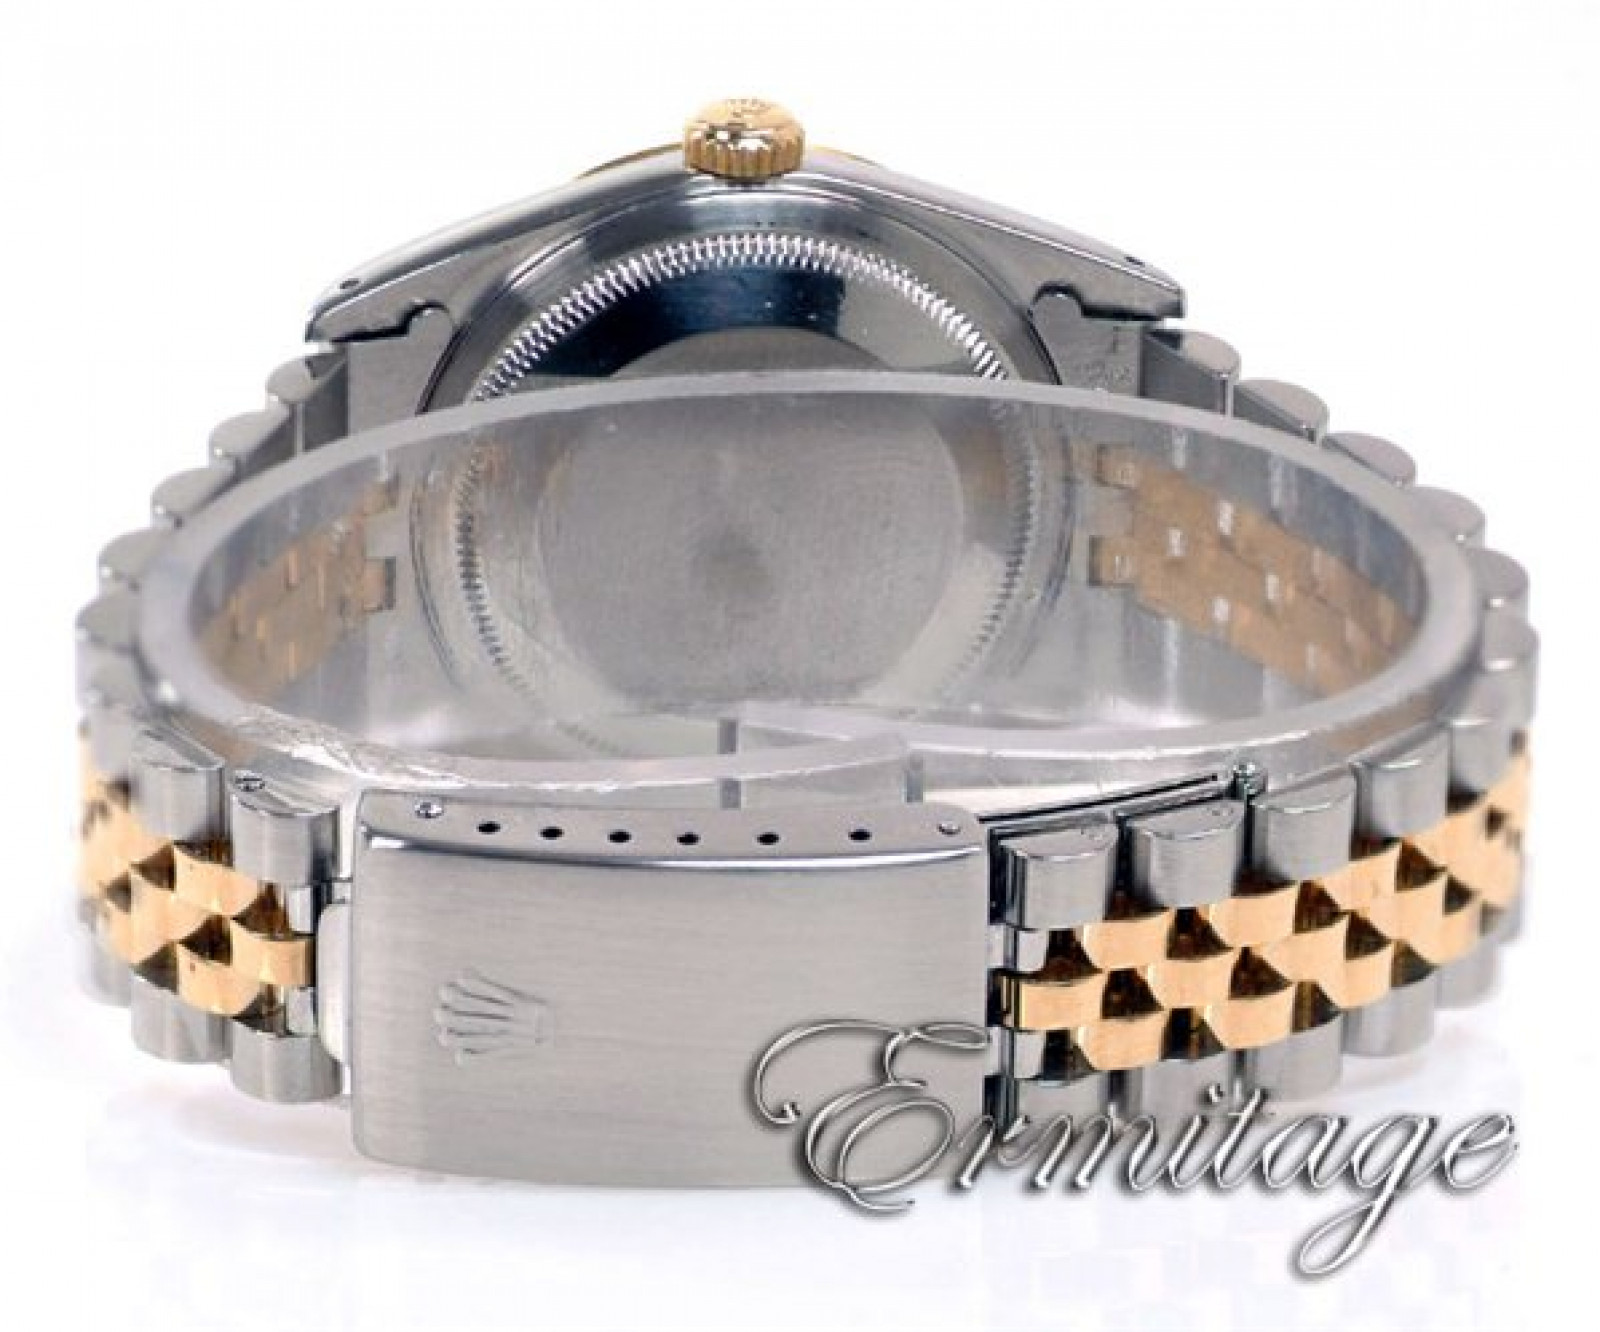 Diamond Rolex Datejust Ref 16233 in Gold & Steel